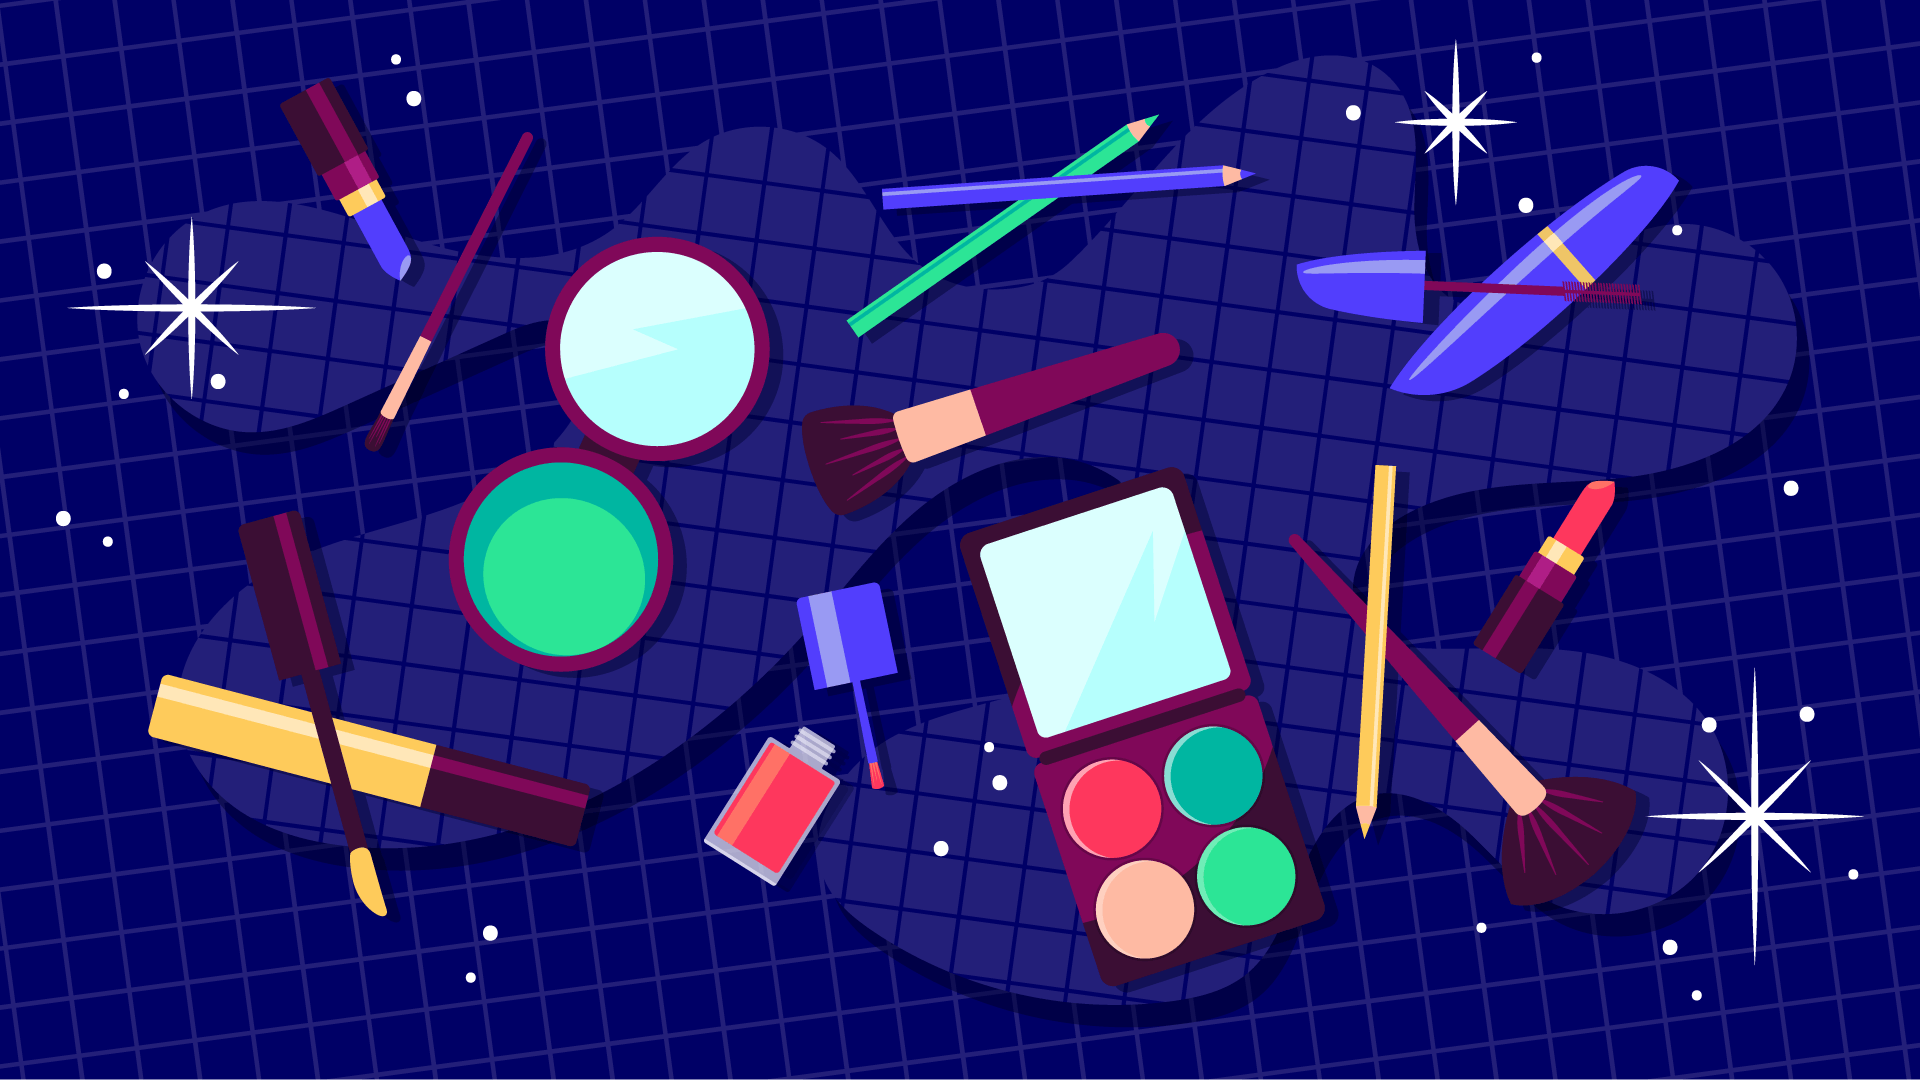 Illustration of makeup products including eyeshadow, brushes, lipstick, eye pencil, mascara, nail polish, etc